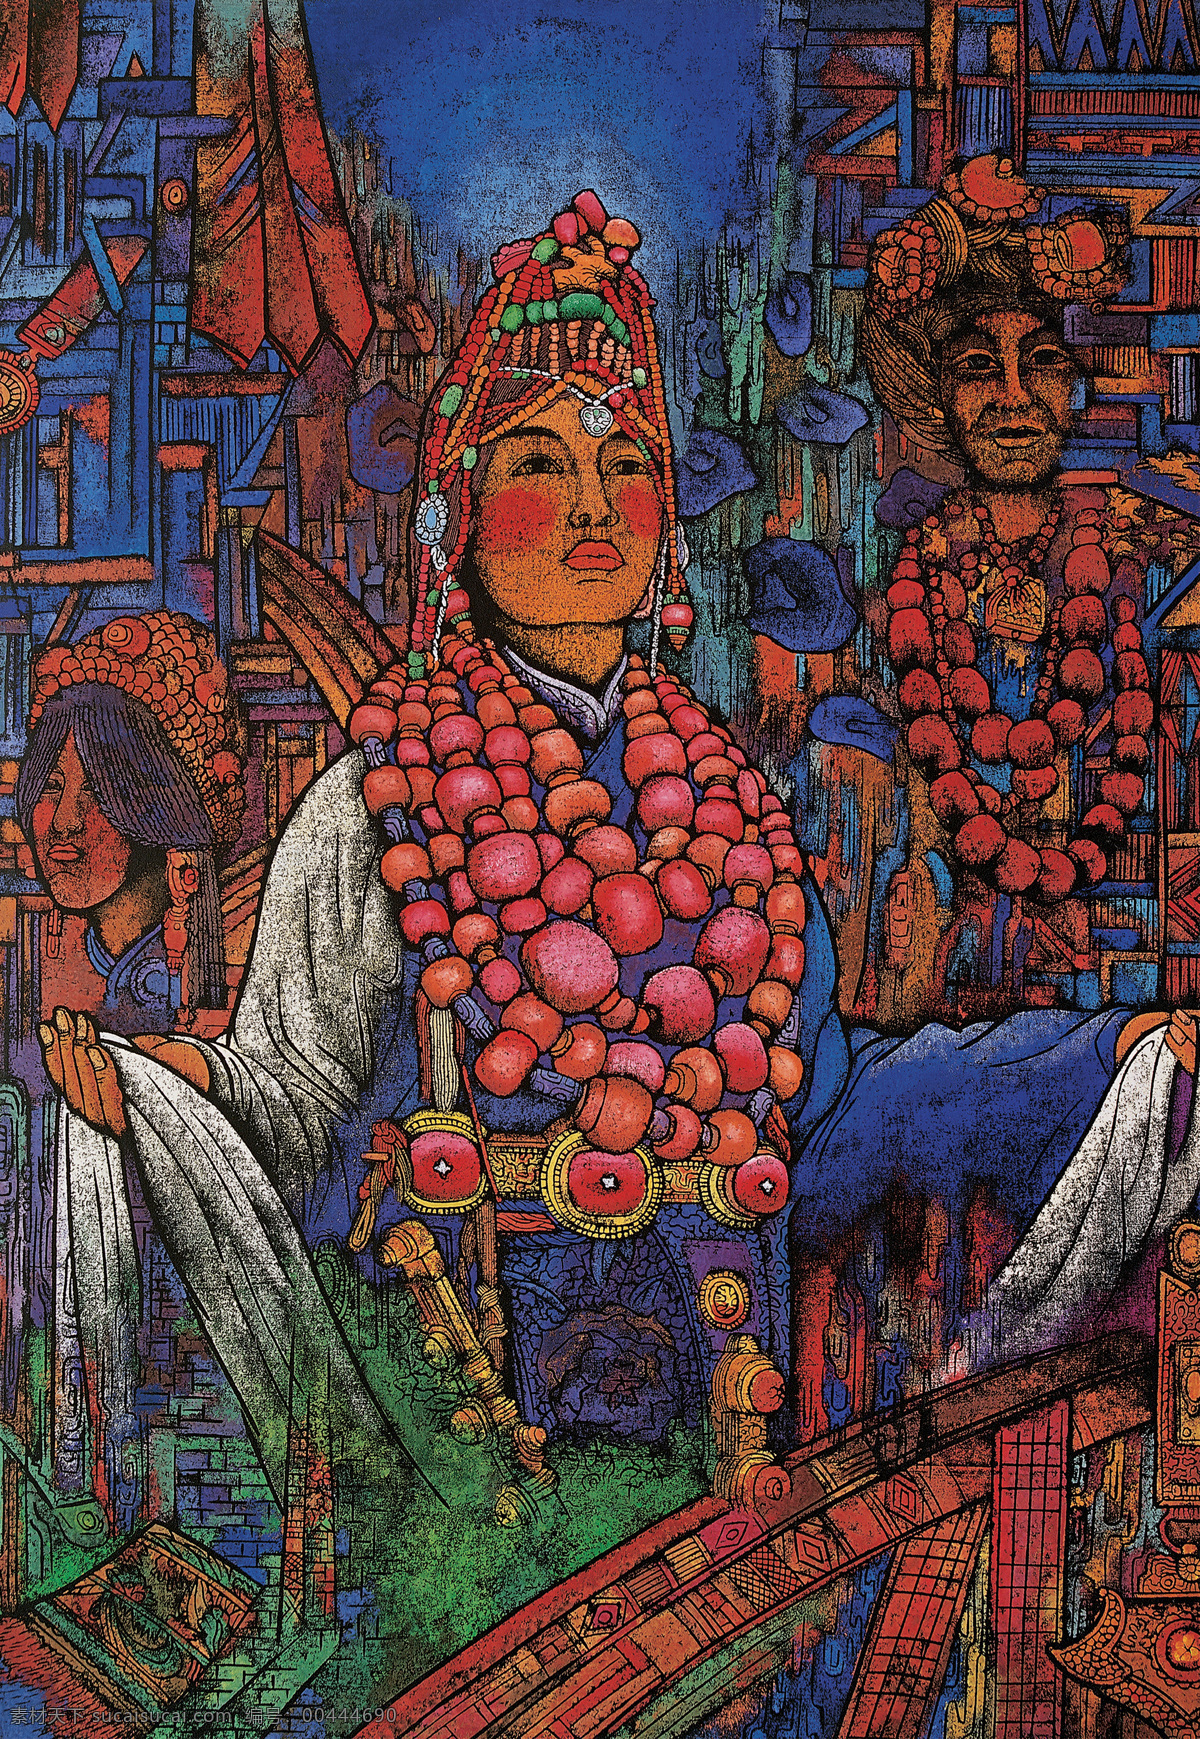 版画 作品 藏族 抽象 抽象画 抽象色彩 绘画 精美 民族 手绘 西藏 黄勇 木版 祥巴 艺术 文化艺术